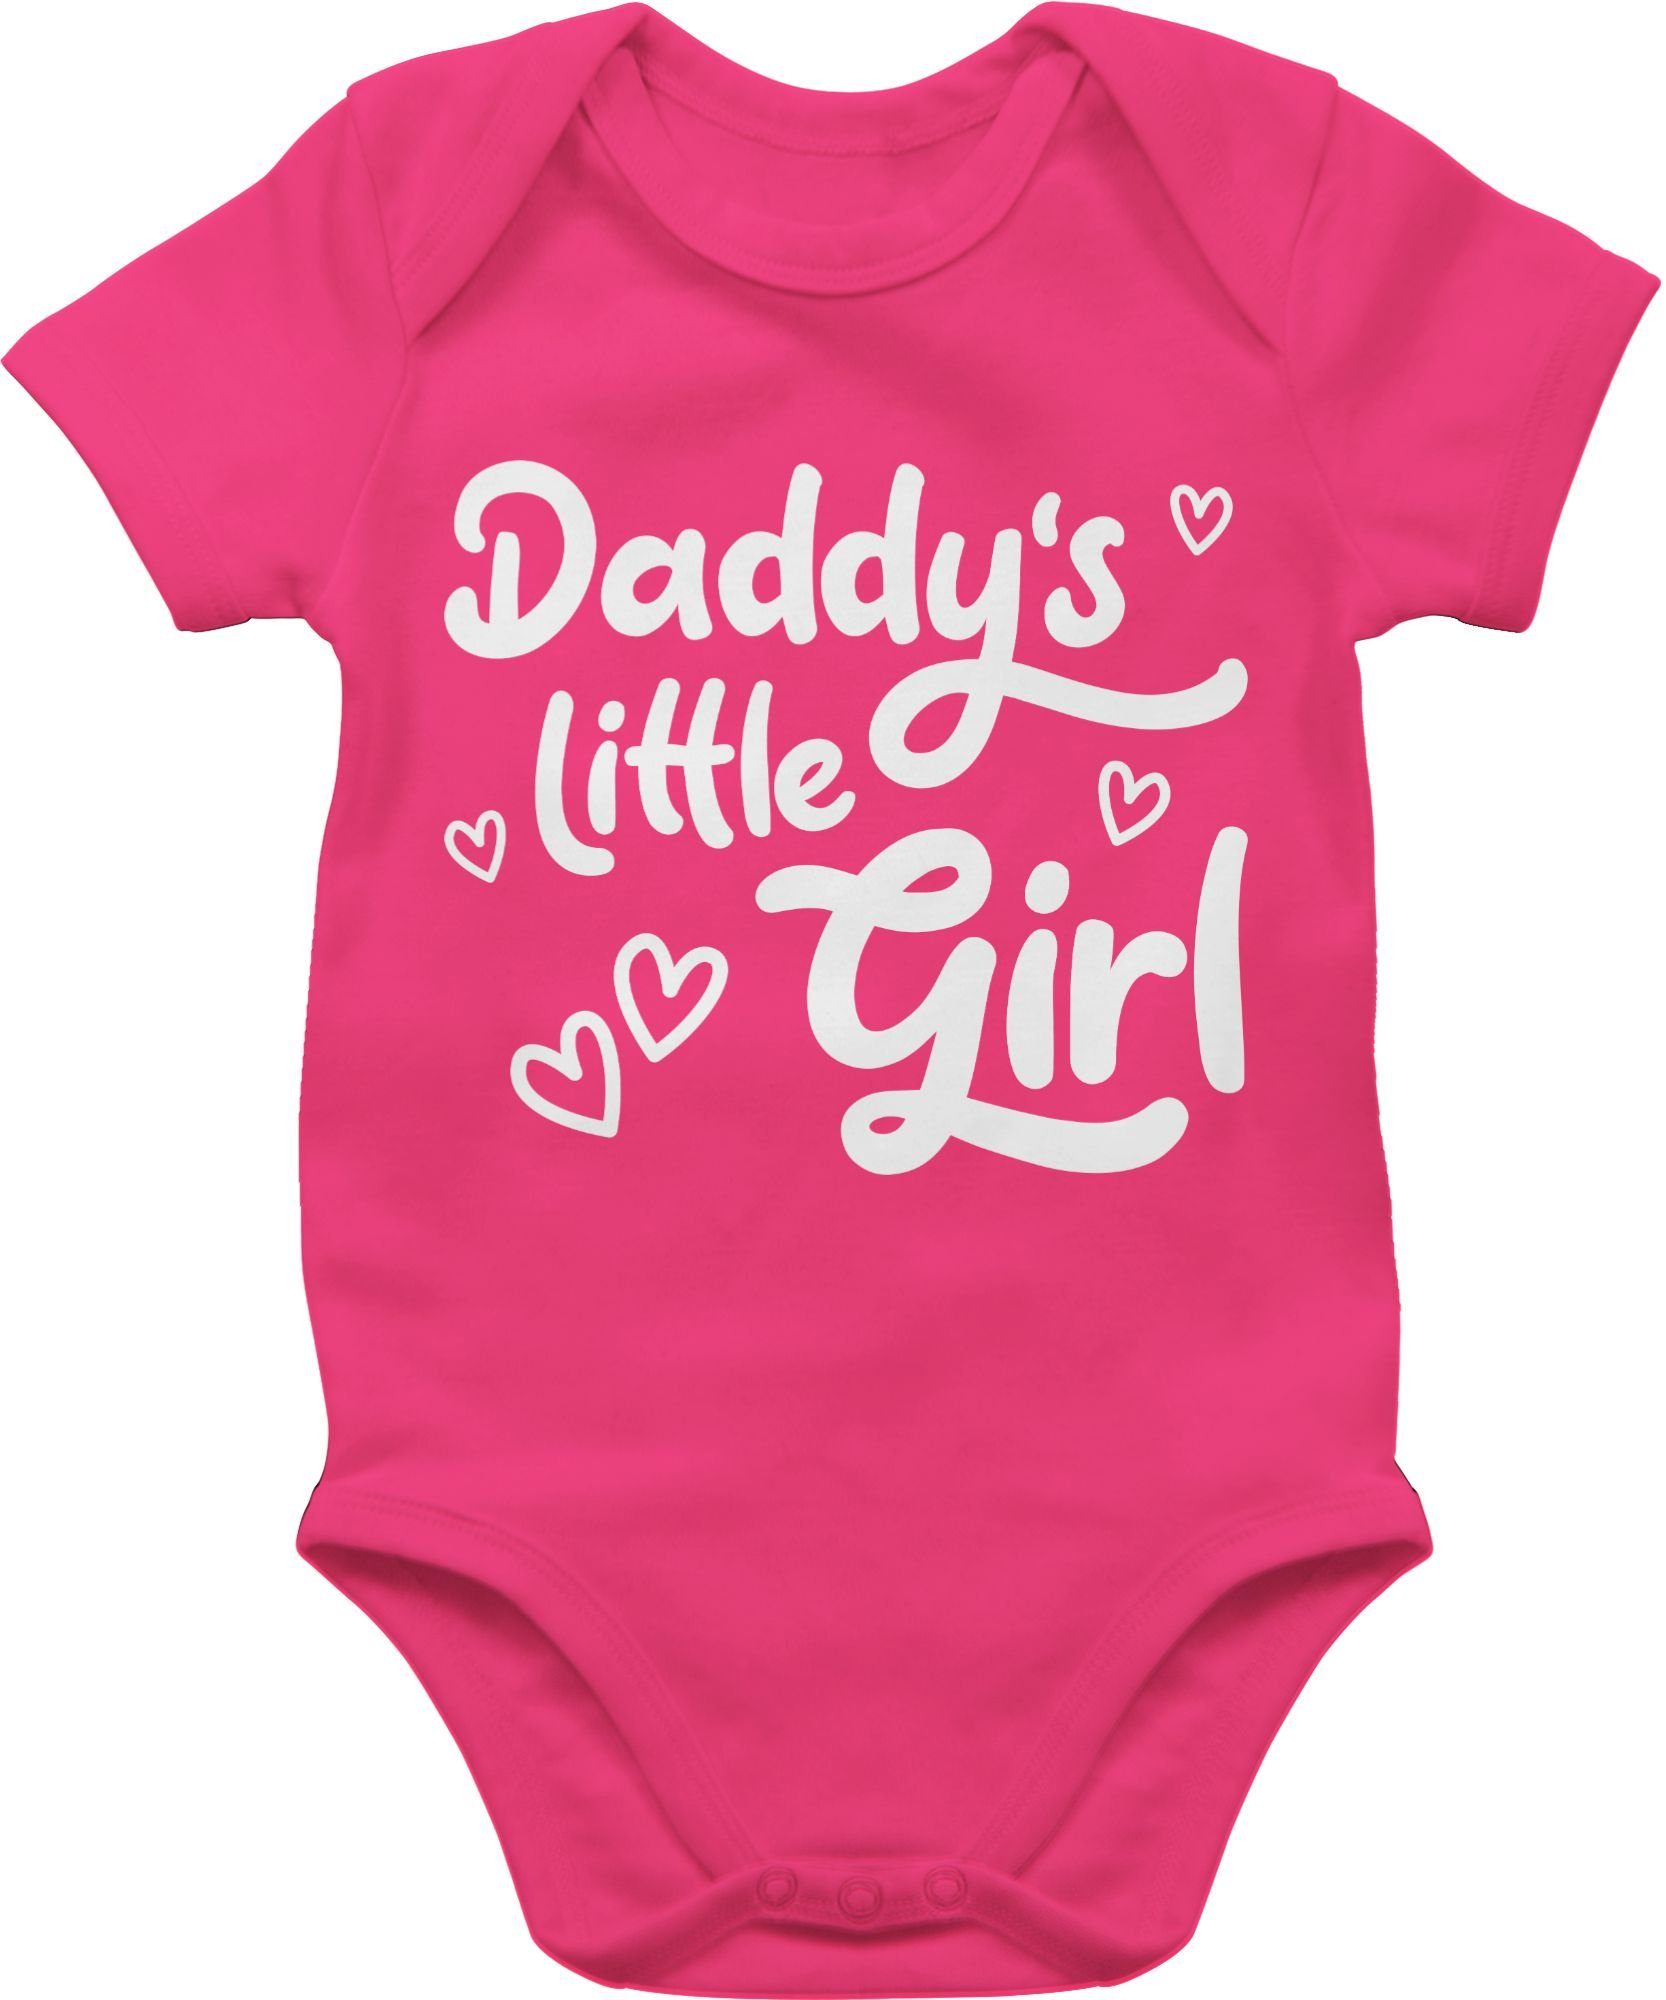 [Toller Preis, solange der Vorrat reicht] Shirtracer Shirtbody Daddy's Fuchsia süß Vatertag Baby Girl weiß 3 little Geschenk